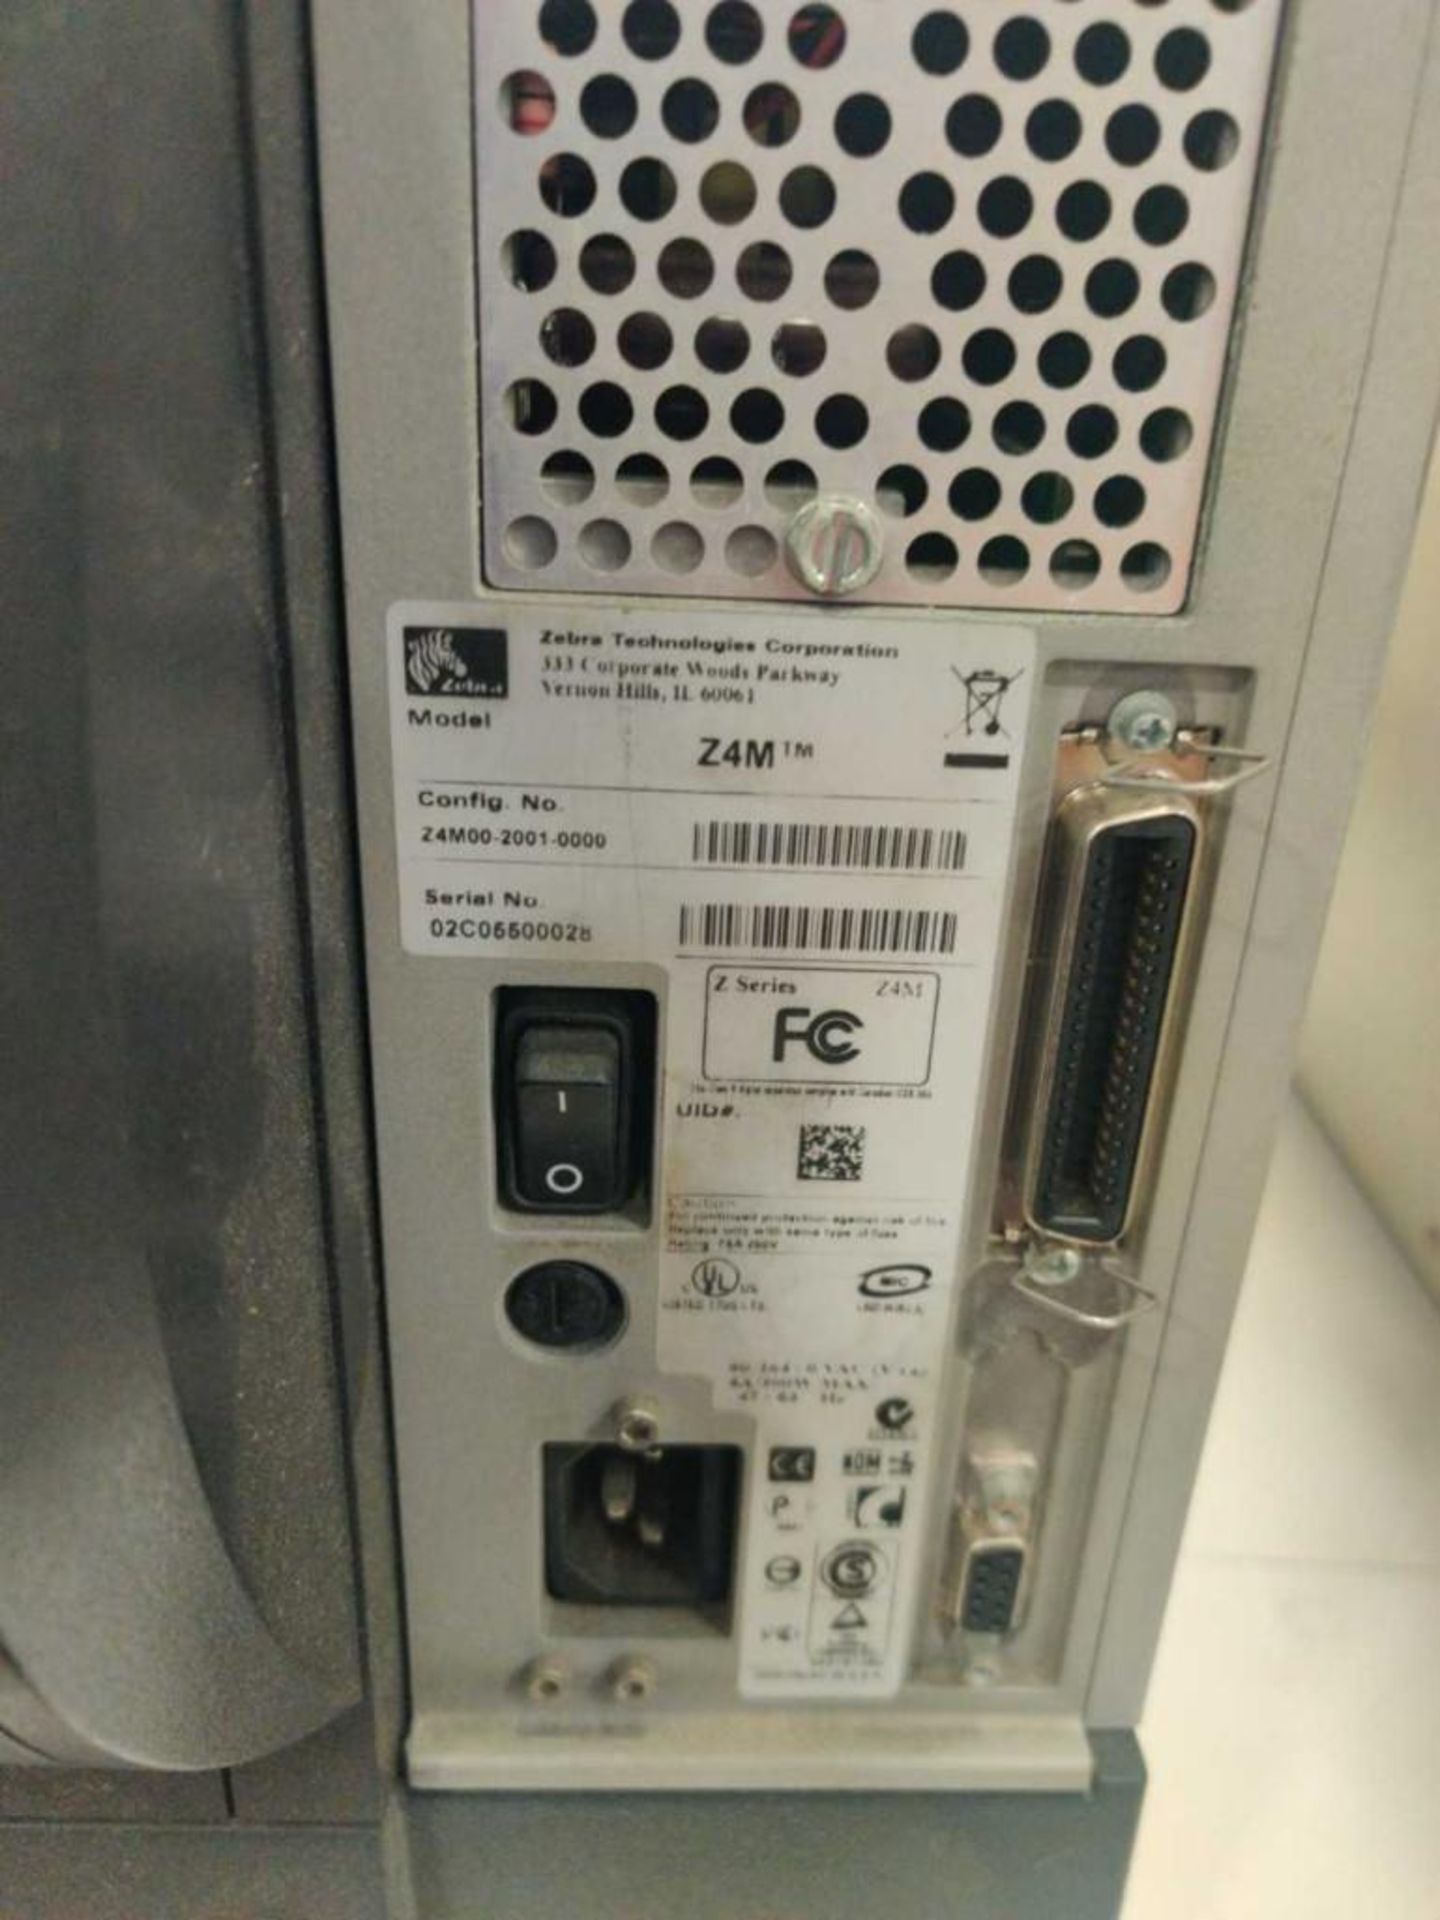 Zebra Label Printer Z4M Plus 15" x 10 1/2" x 13" - Image 6 of 6